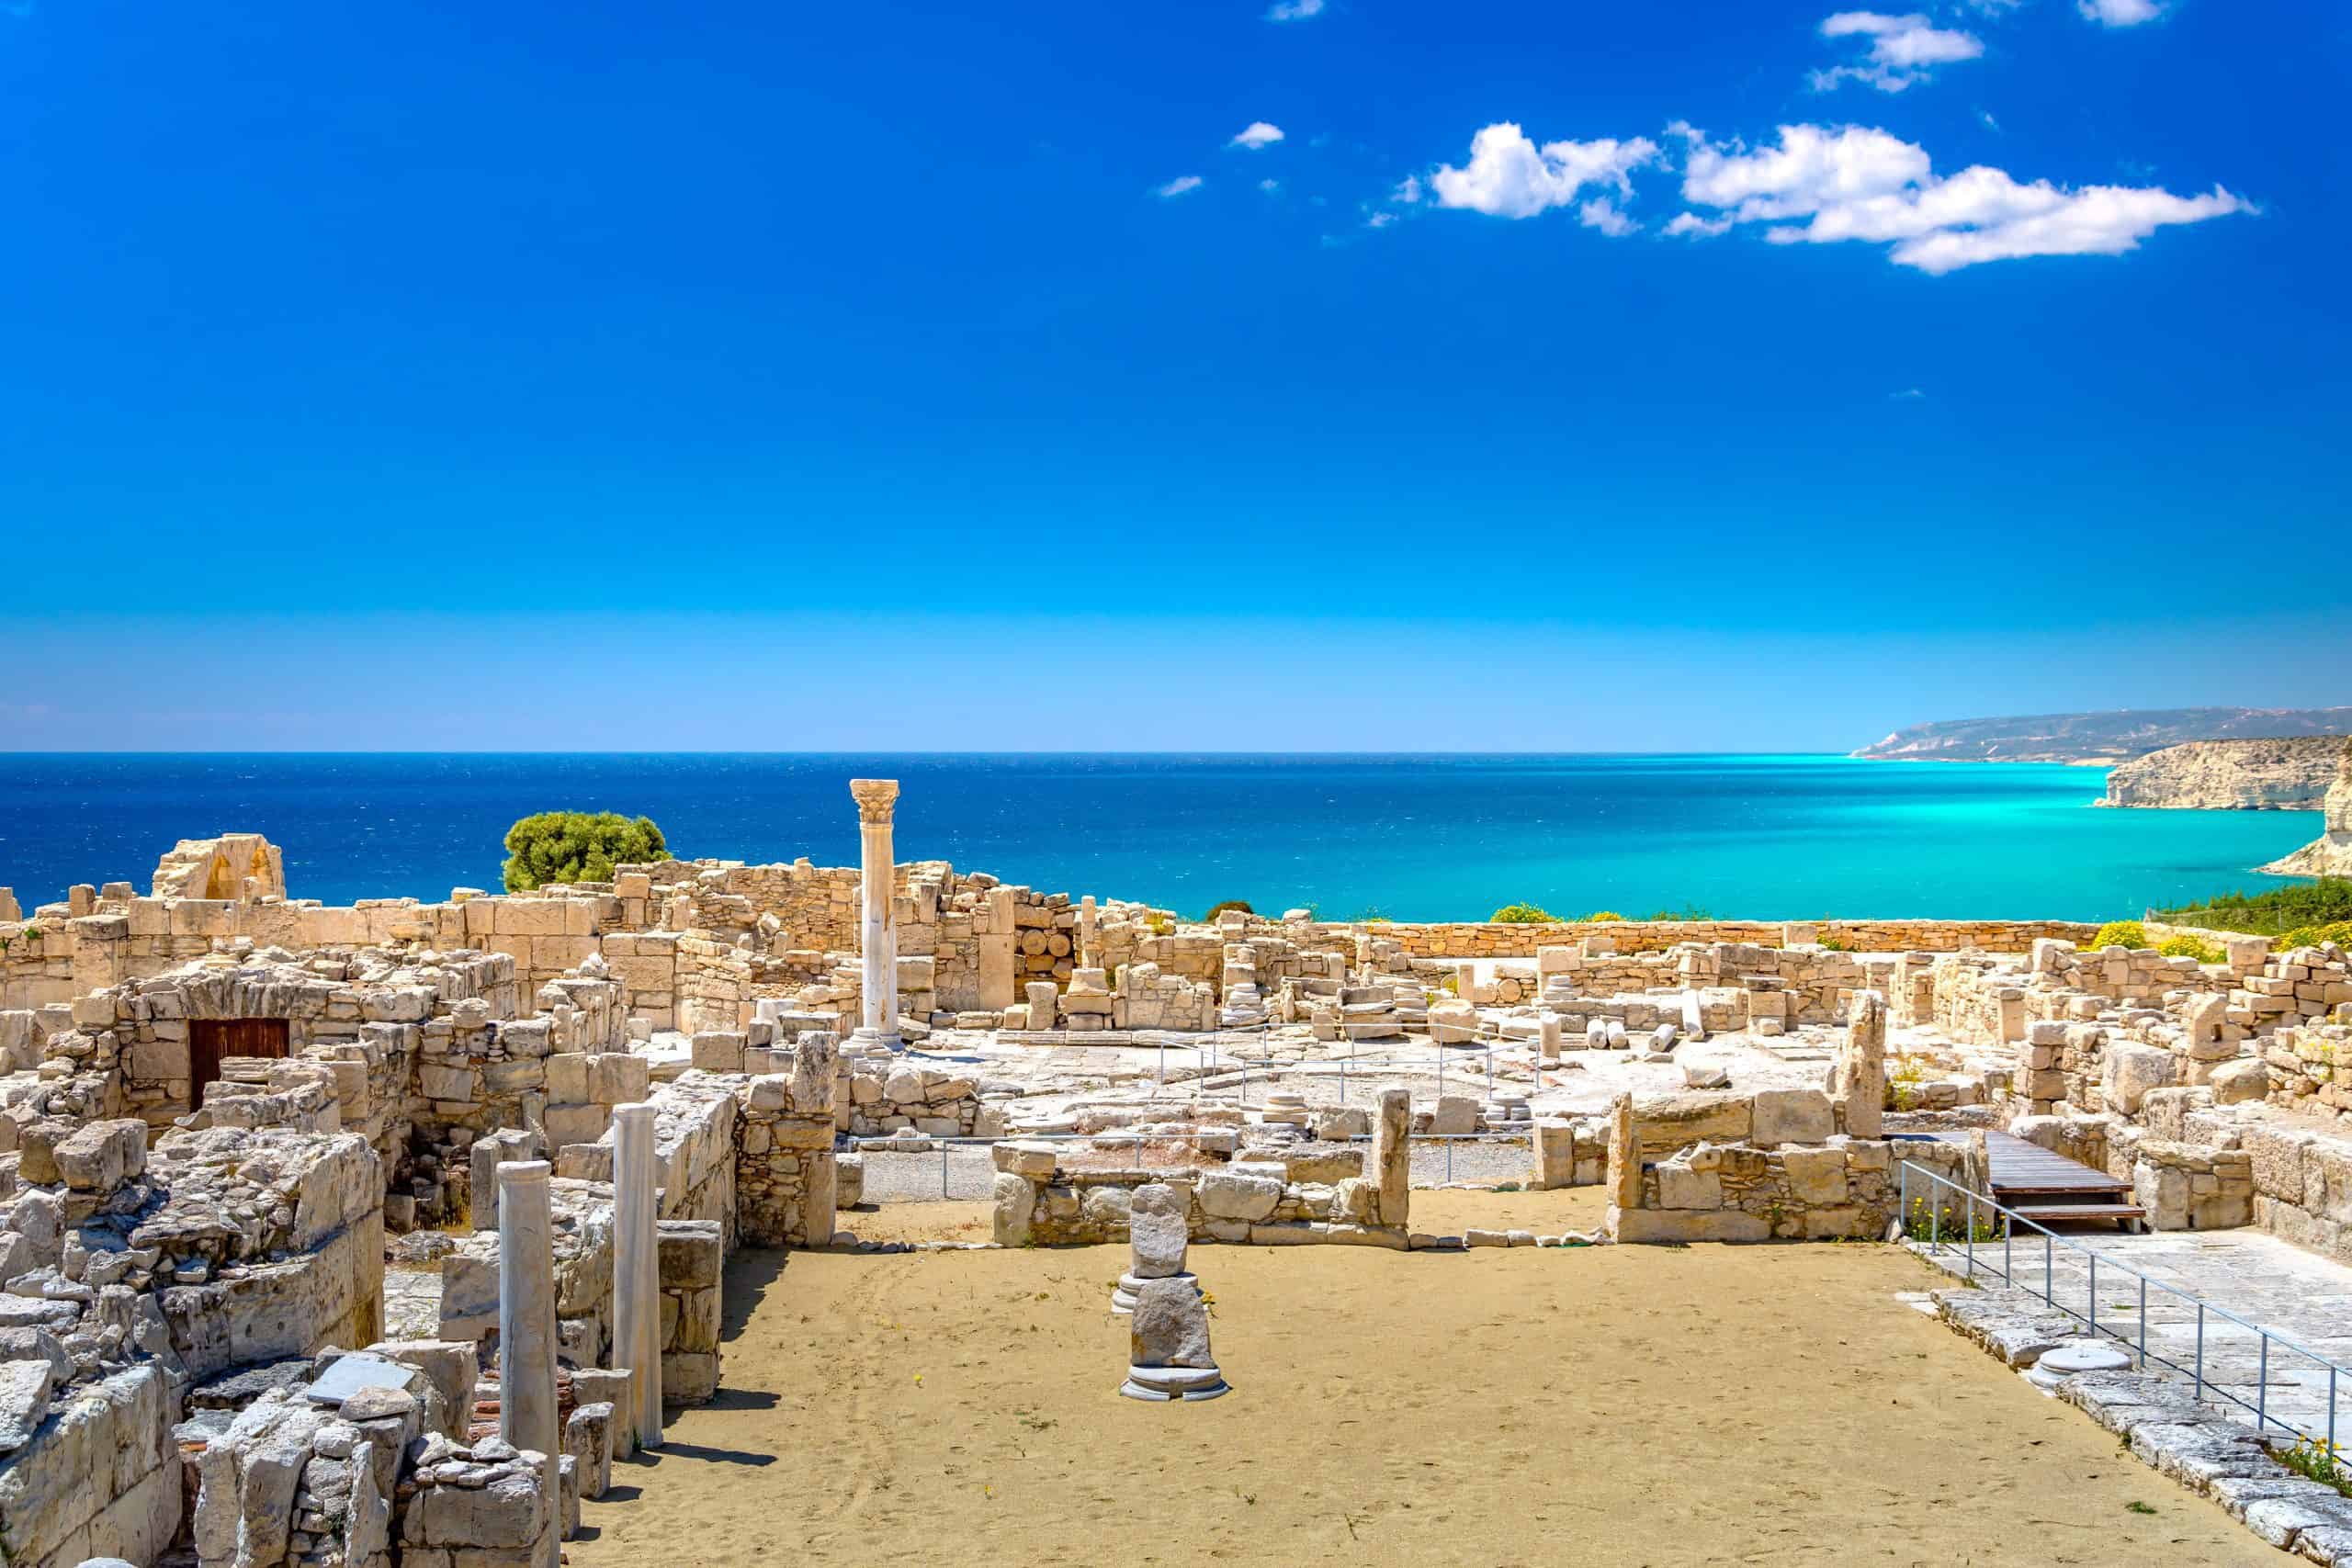 Kourion là một thành phố cổ Hy Lạp-Rôma có nguồn gốc từ thế kỷ 2 trước Công nguyên